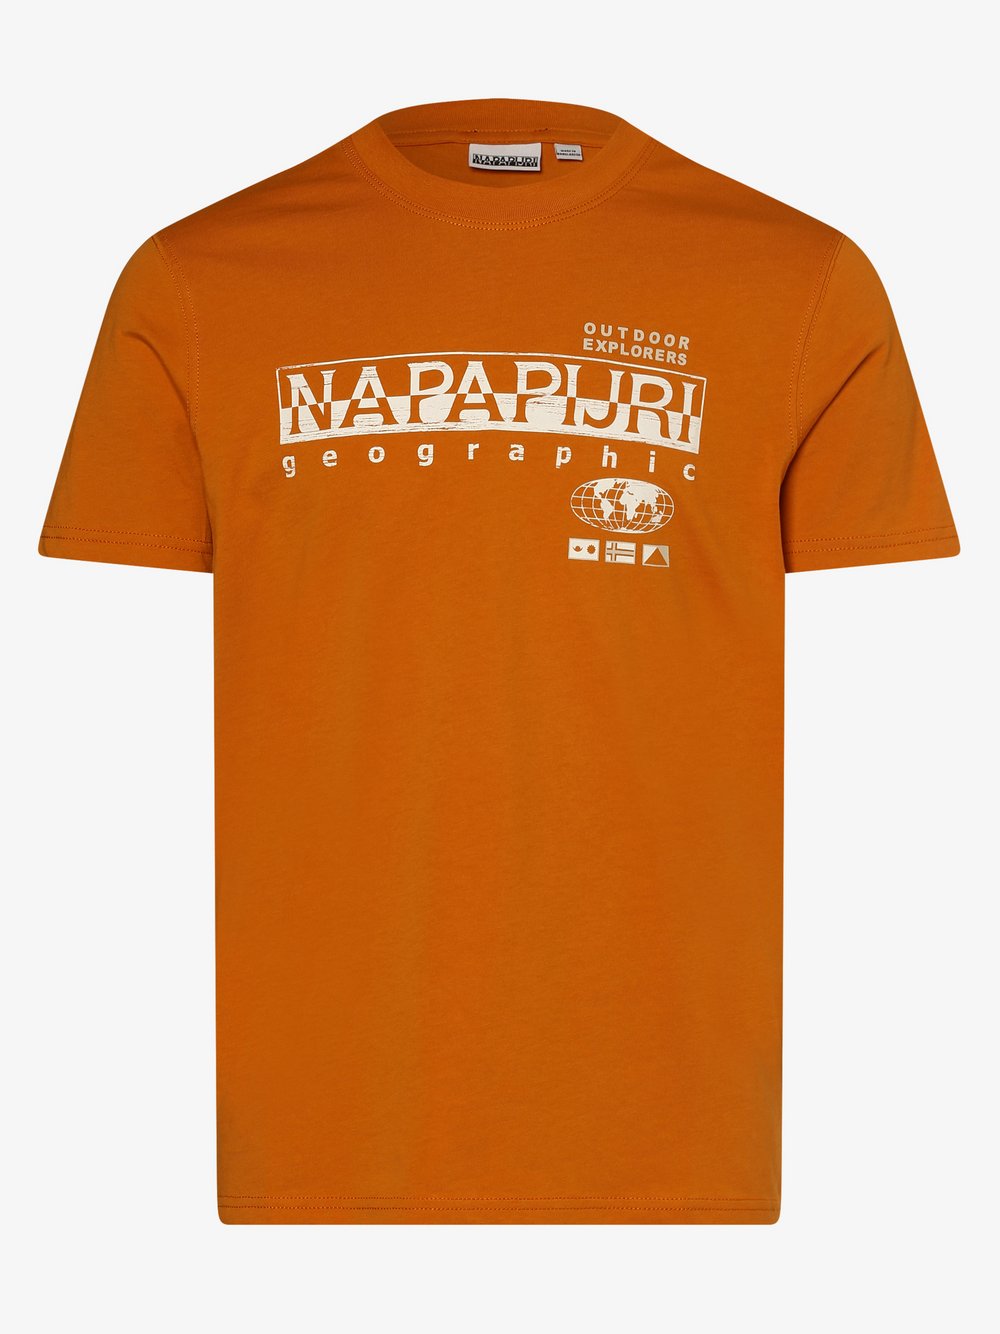 Napapijri - T-shirt męski, pomarańczowy